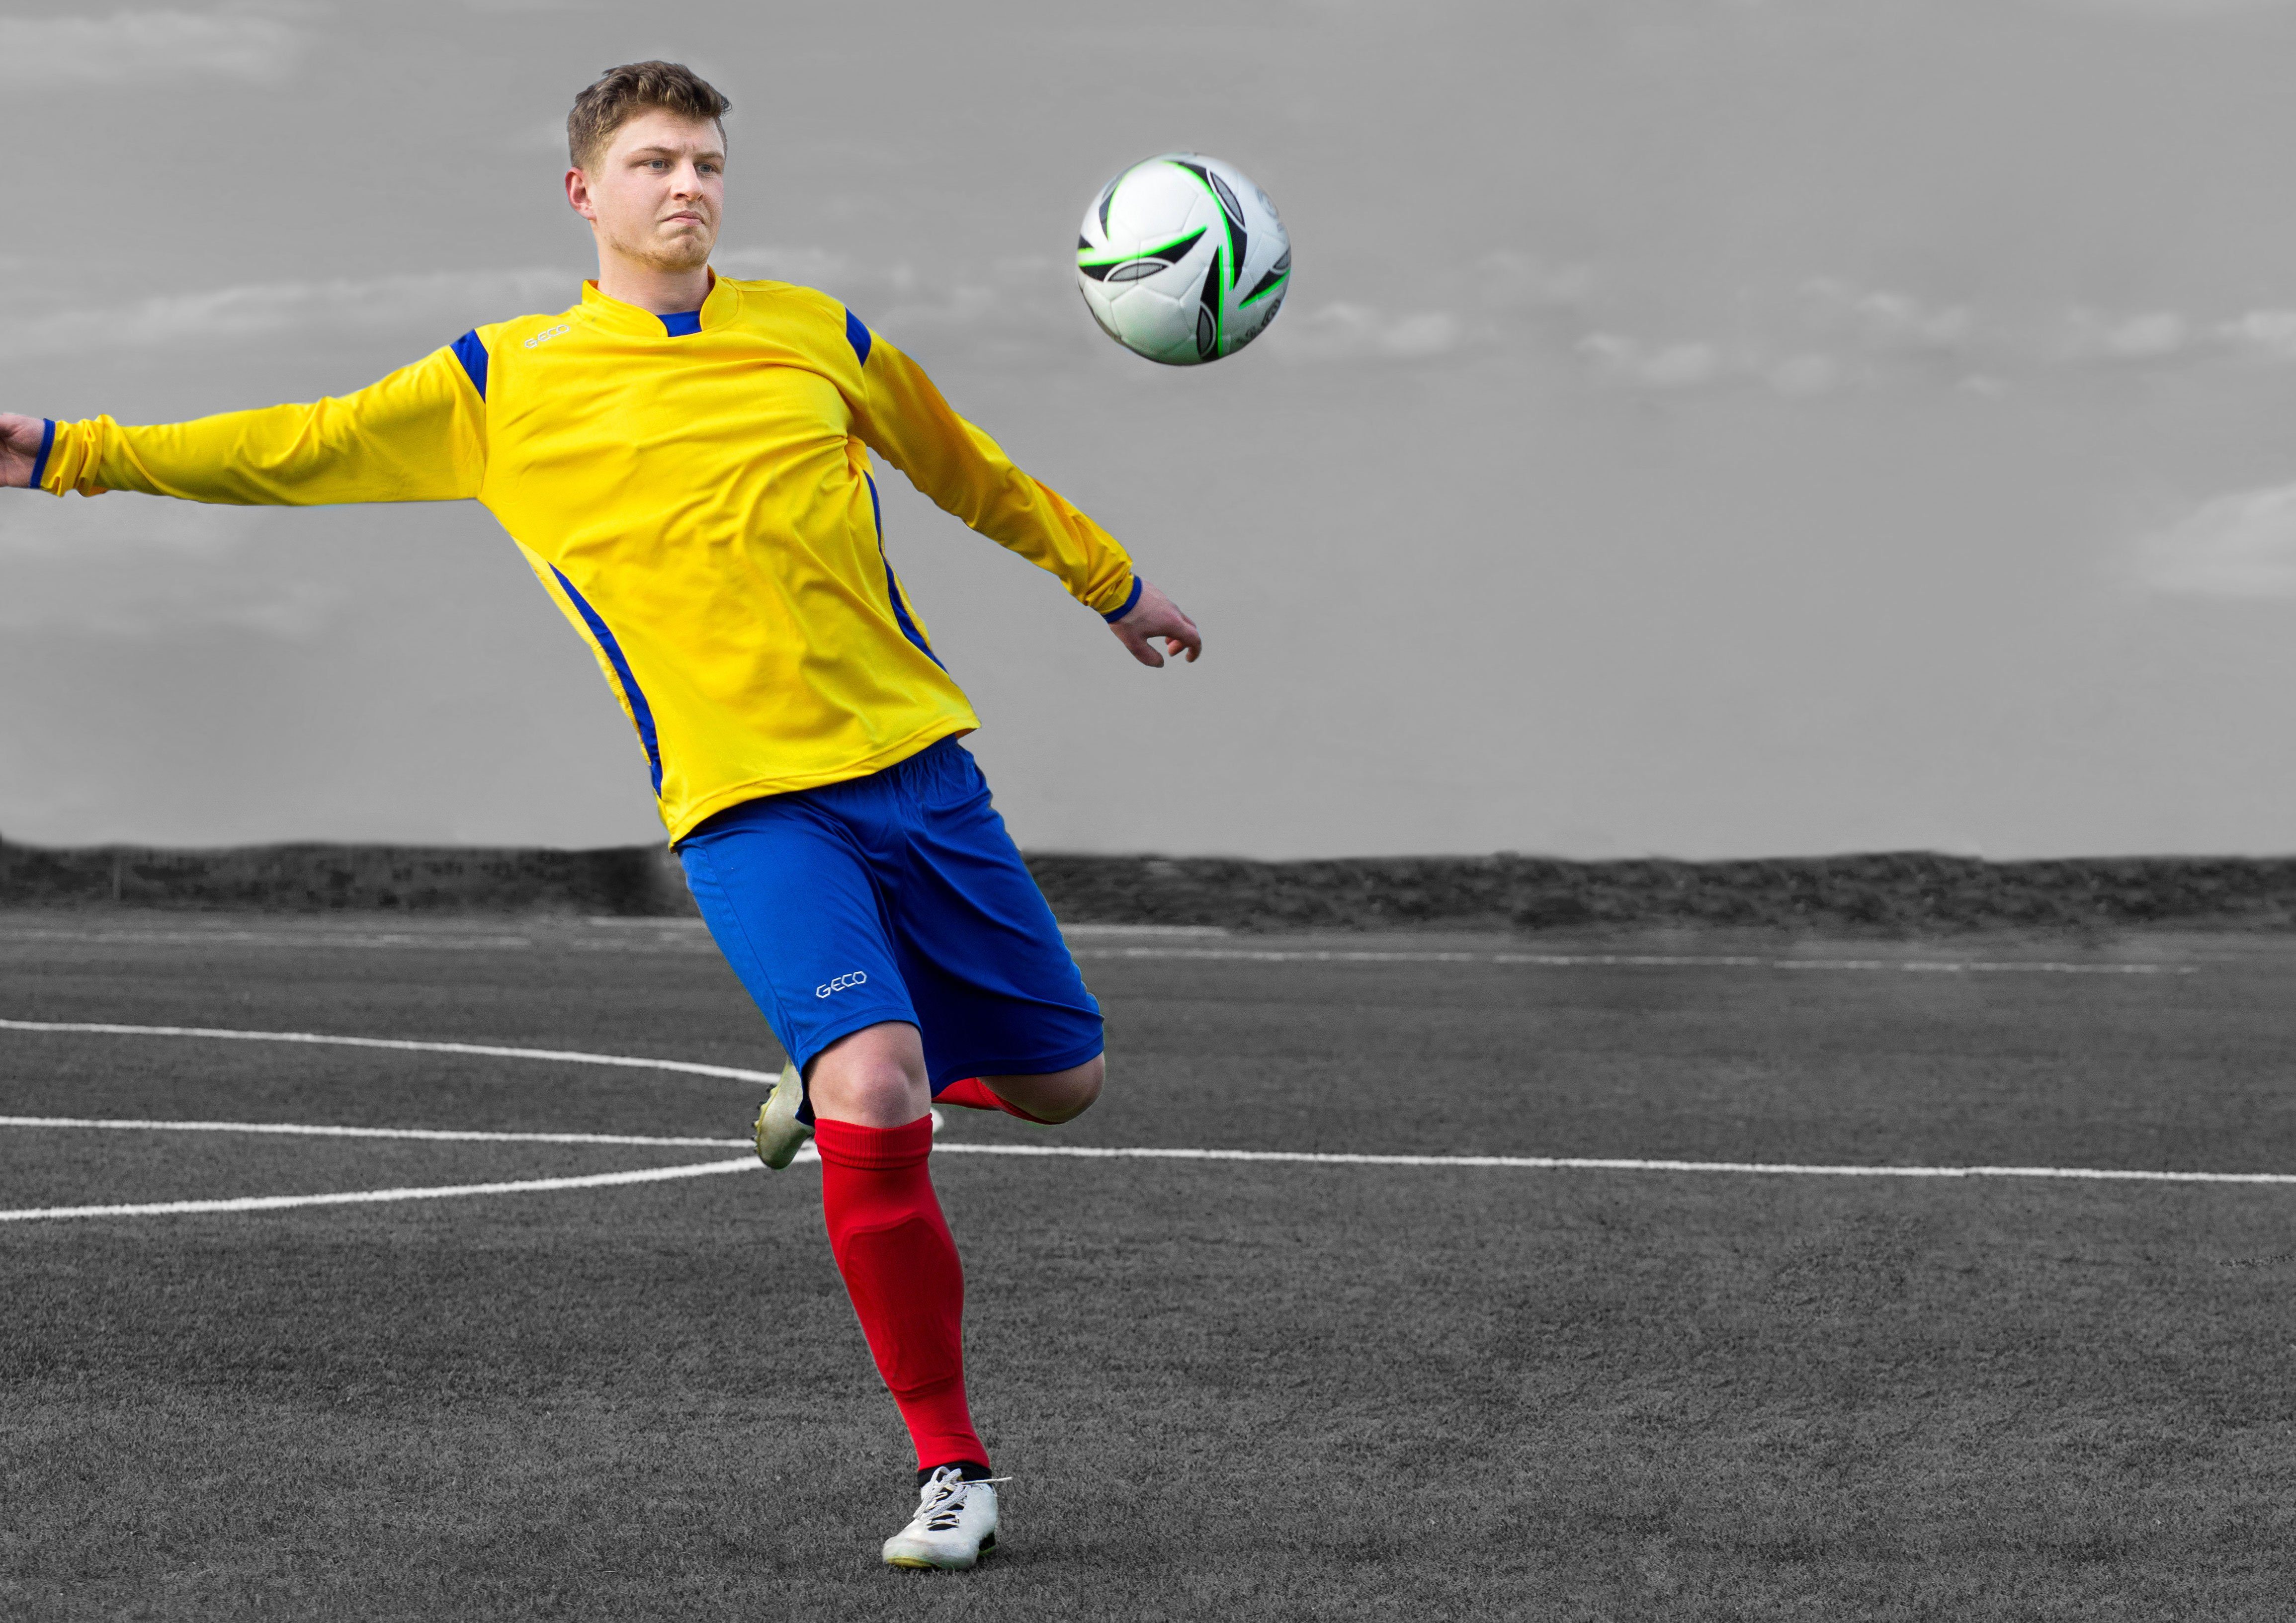 Stutzenstrümpfe strapazierfähig Stutzenstrümpfe Passform Strumpfstutzen Sportswear Fußball Geco perfekter sky mit CALIMA